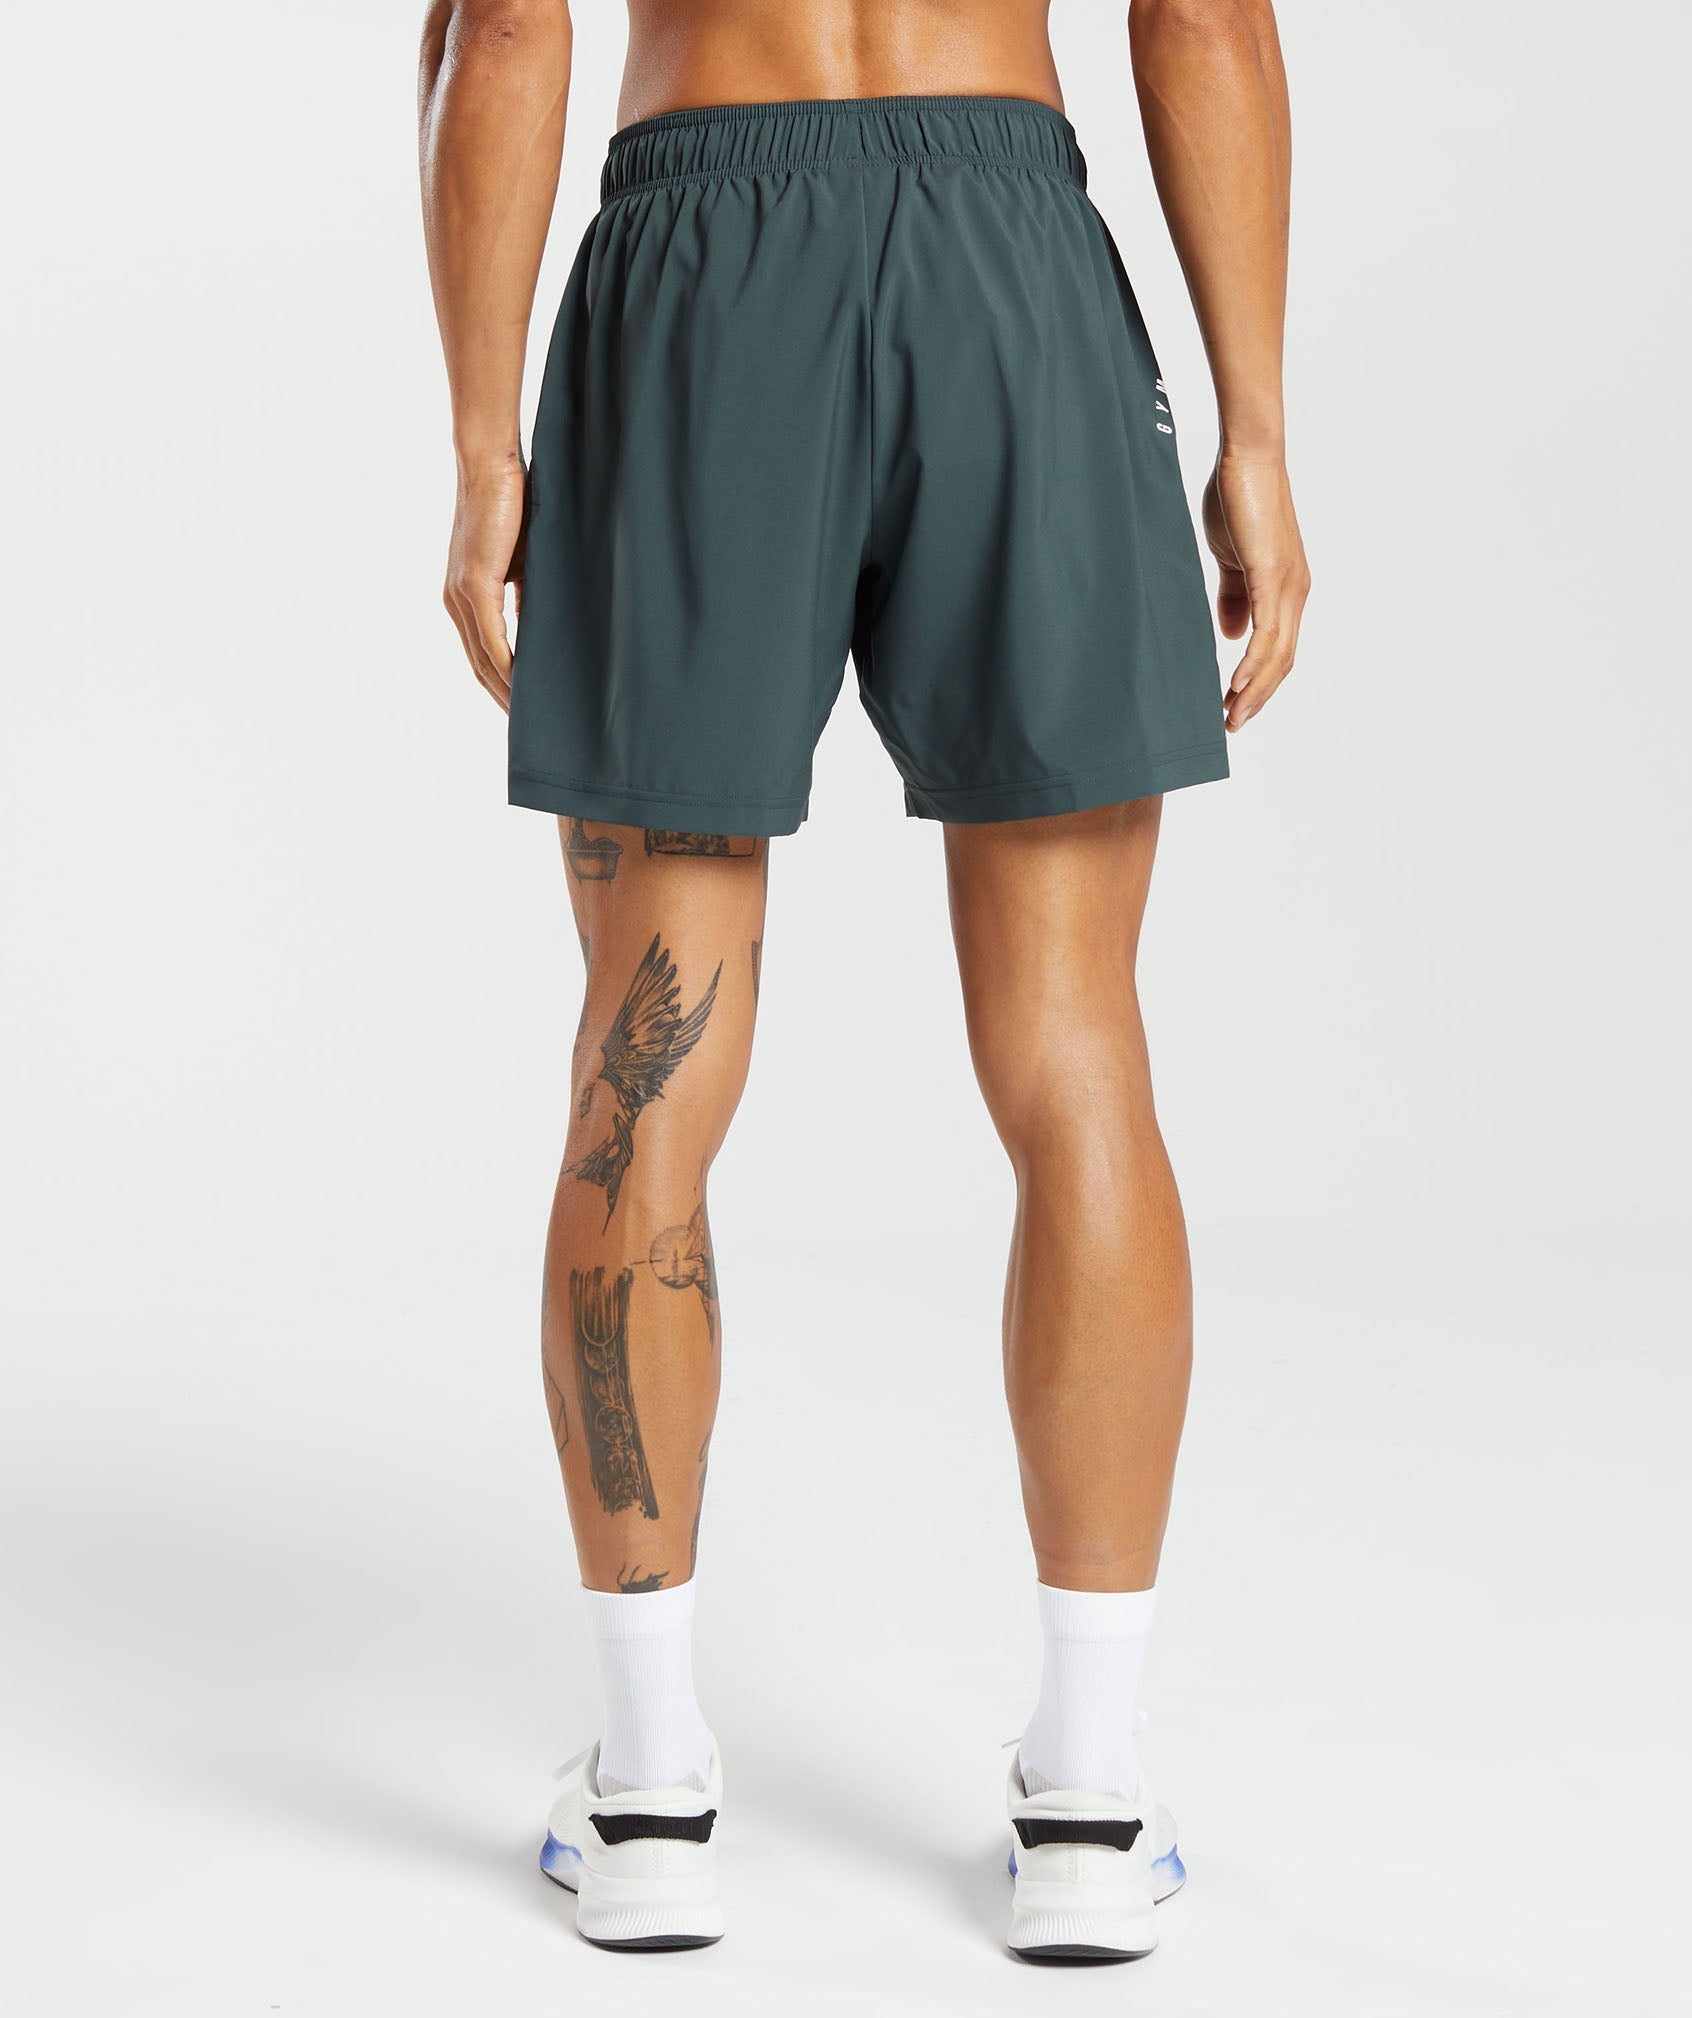 Gymshark Sport 7 Shorts - Fog Green/Black